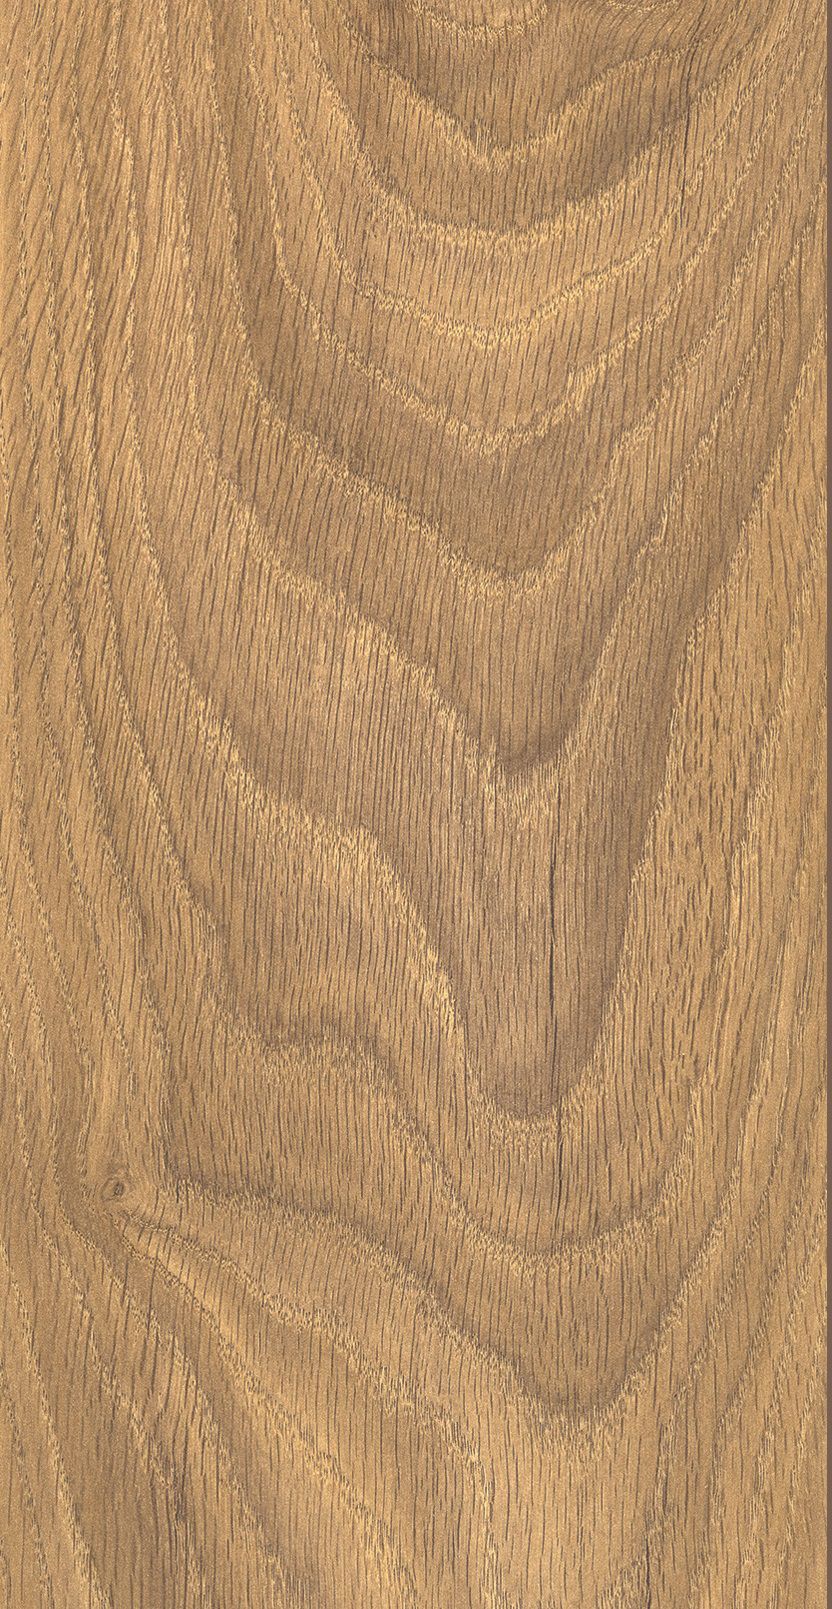 Keswick Medium Oak 12mm Laminate Flooring - Sample